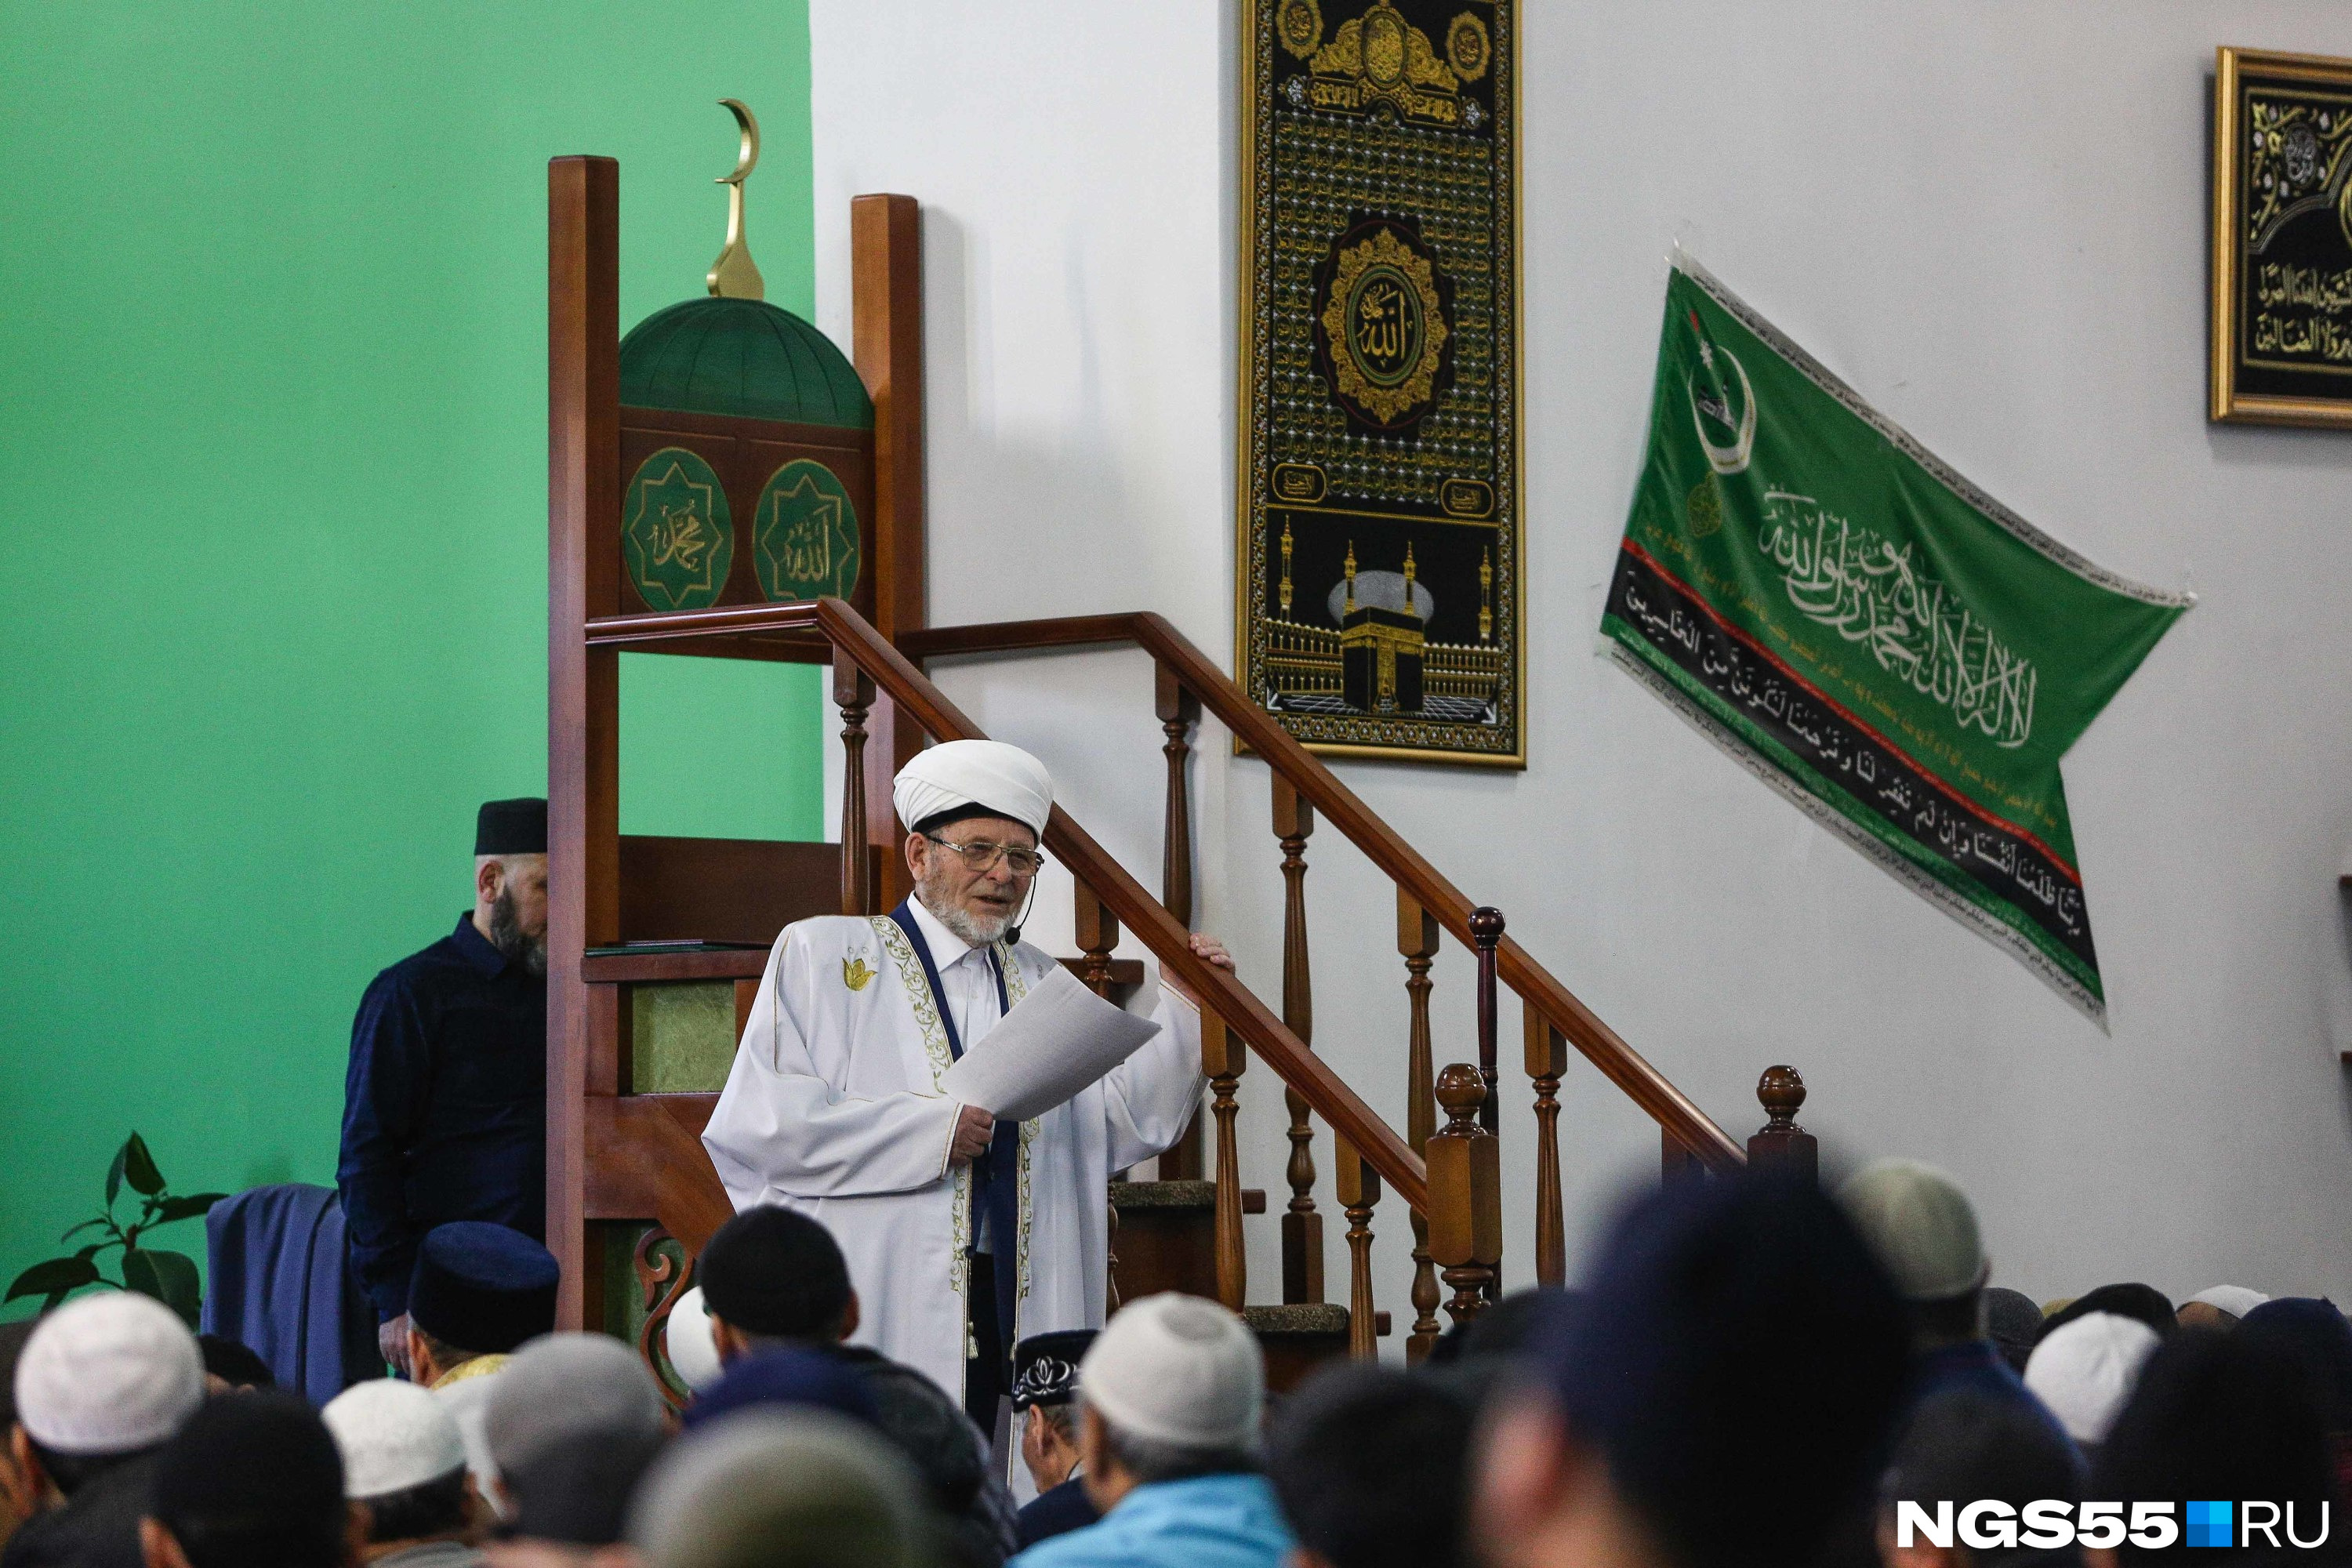 Кстати, сегодня в мечеть с поздравлениями приезжал врио губернатора Виталий Хоценко, но мы его не застали